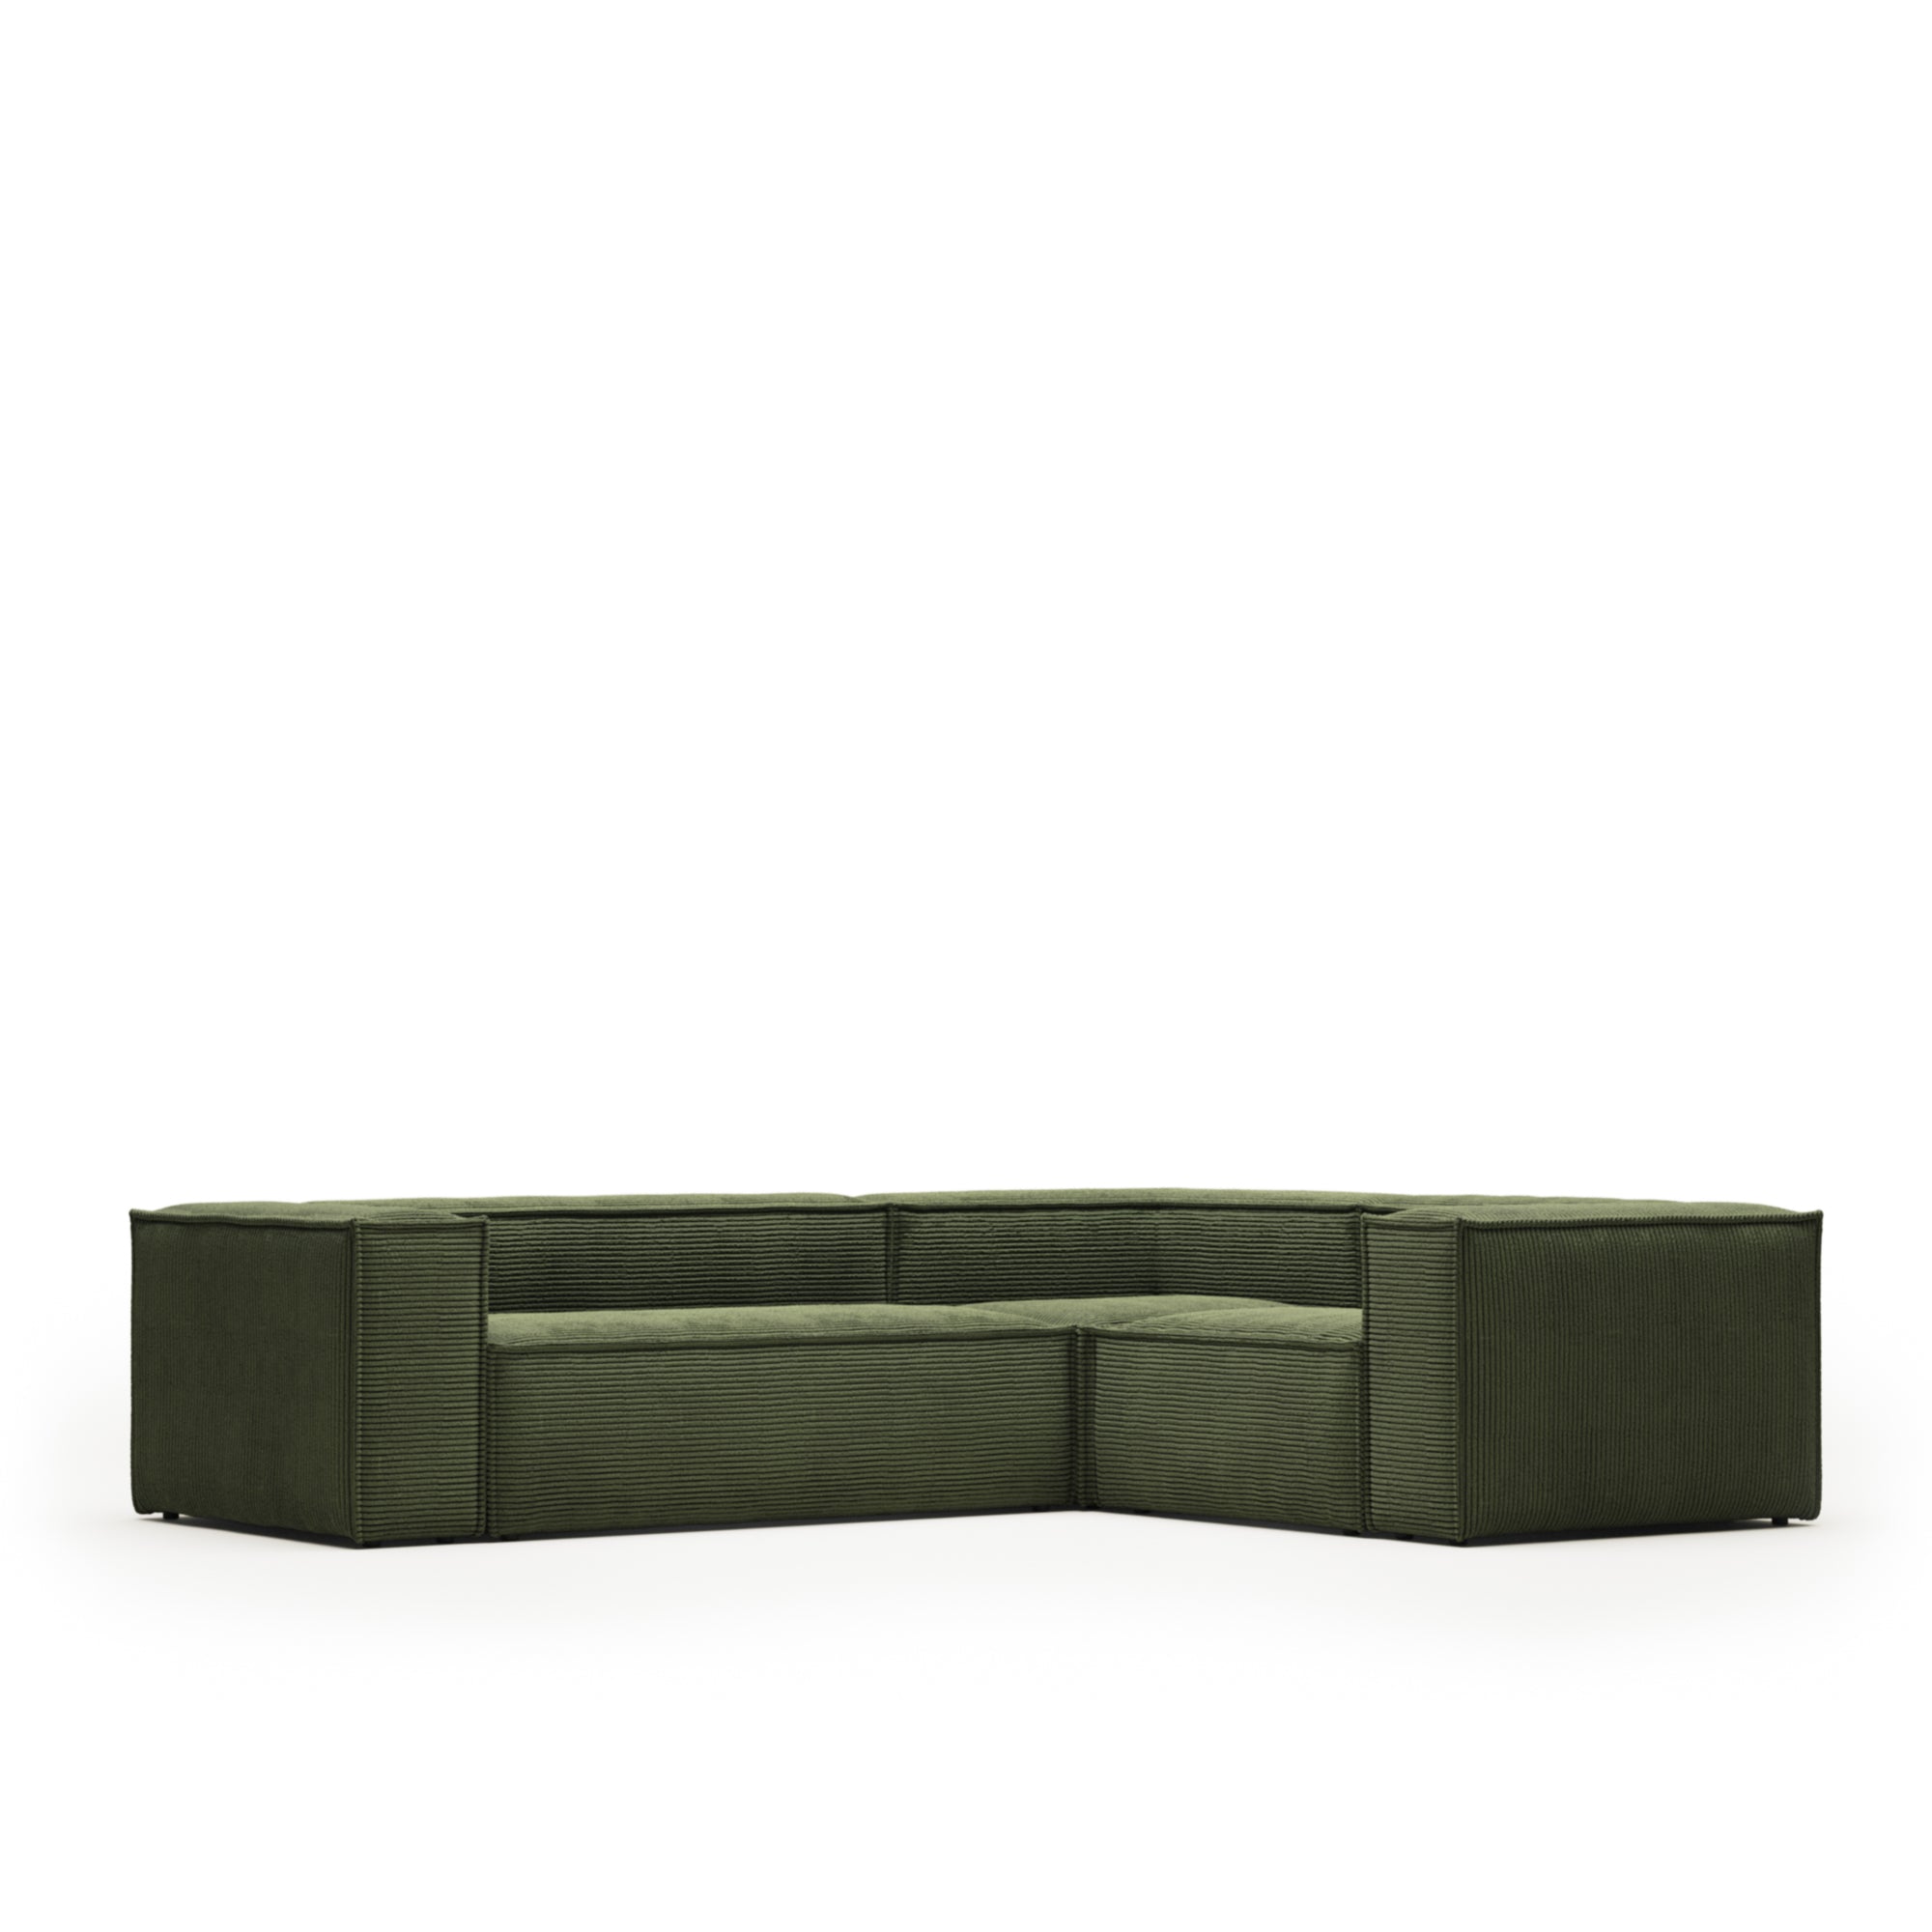 Blok 3 személyes sarokkanapé, zöld, széles varrású kordbársony, 290 x 230 cm / 230 cm 290 cm